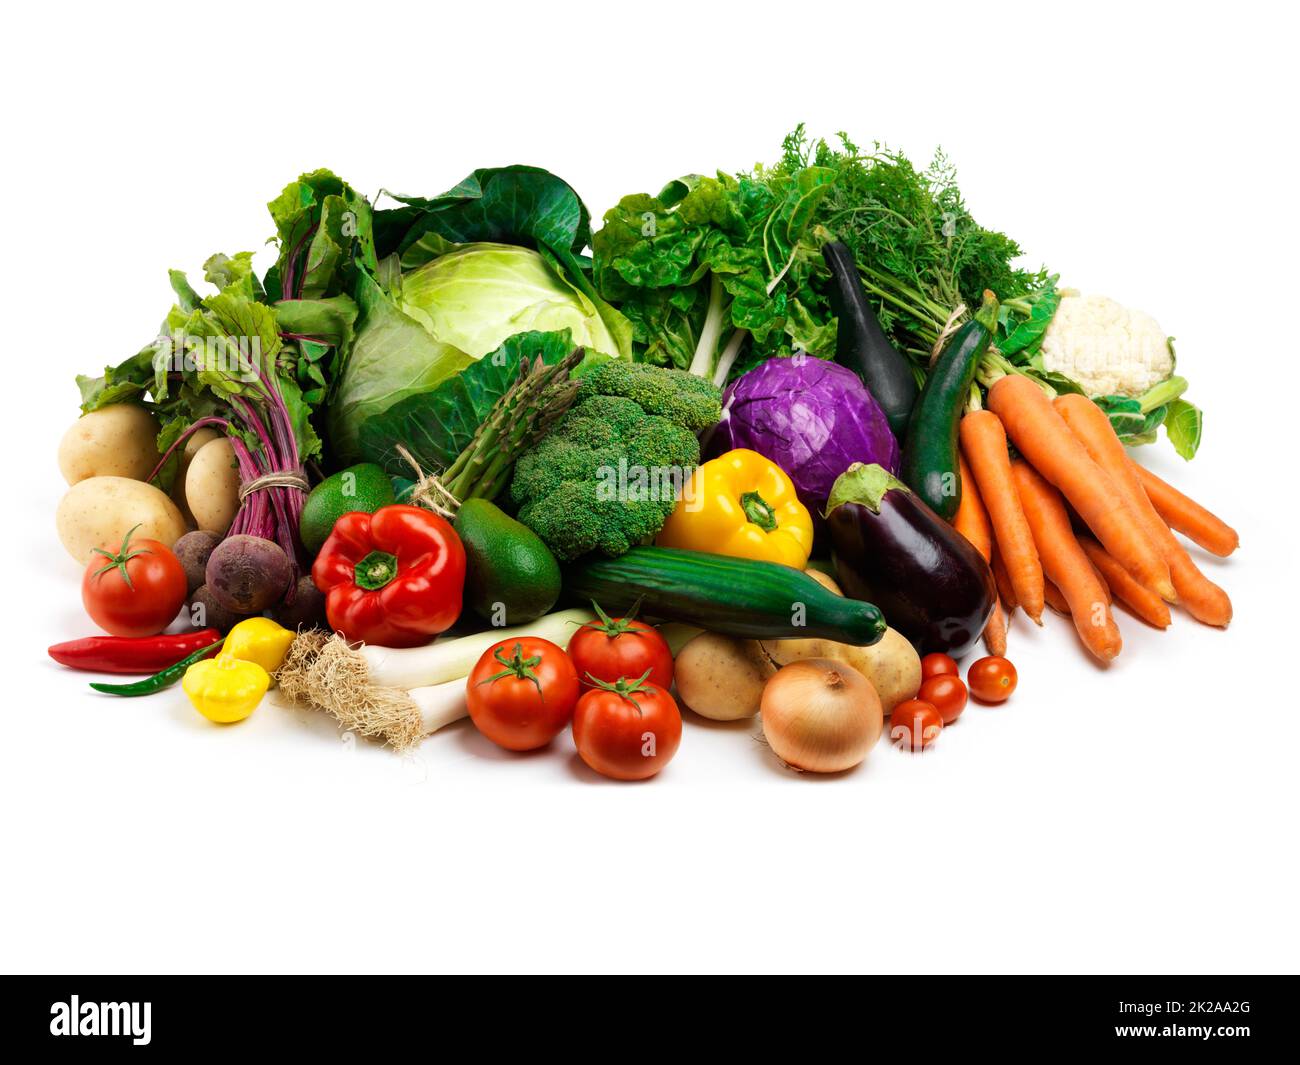 Verschüttet das Füllhorn. Studioaufnahme eines Haufen Obst und Gemüse vor weißem Hintergrund. Stockfoto